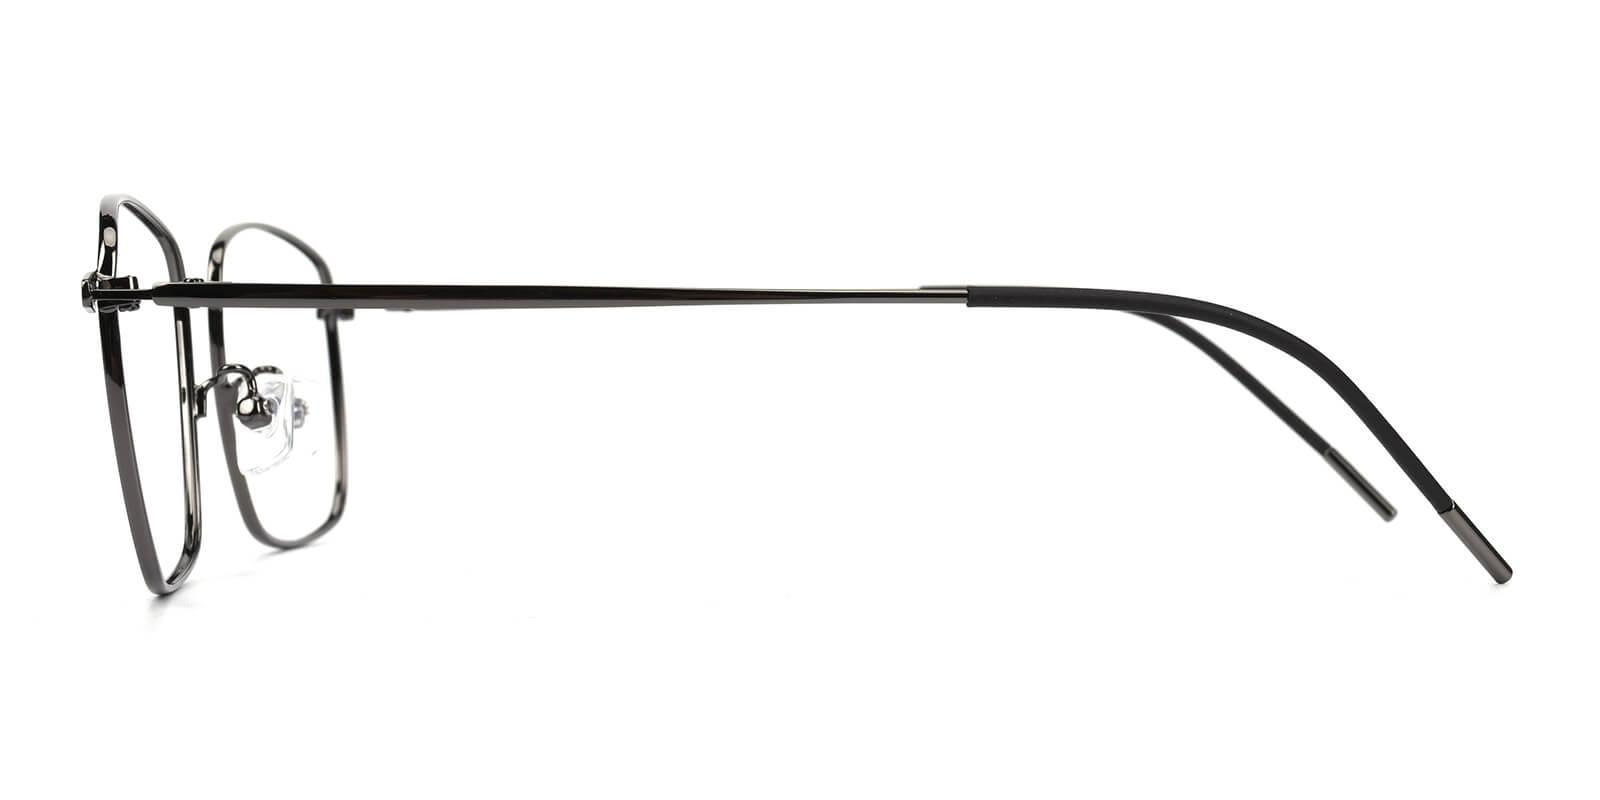 Bezel Clip-On Gun Metal Eyeglasses , NosePads , SpringHinges Frames from ABBE Glasses